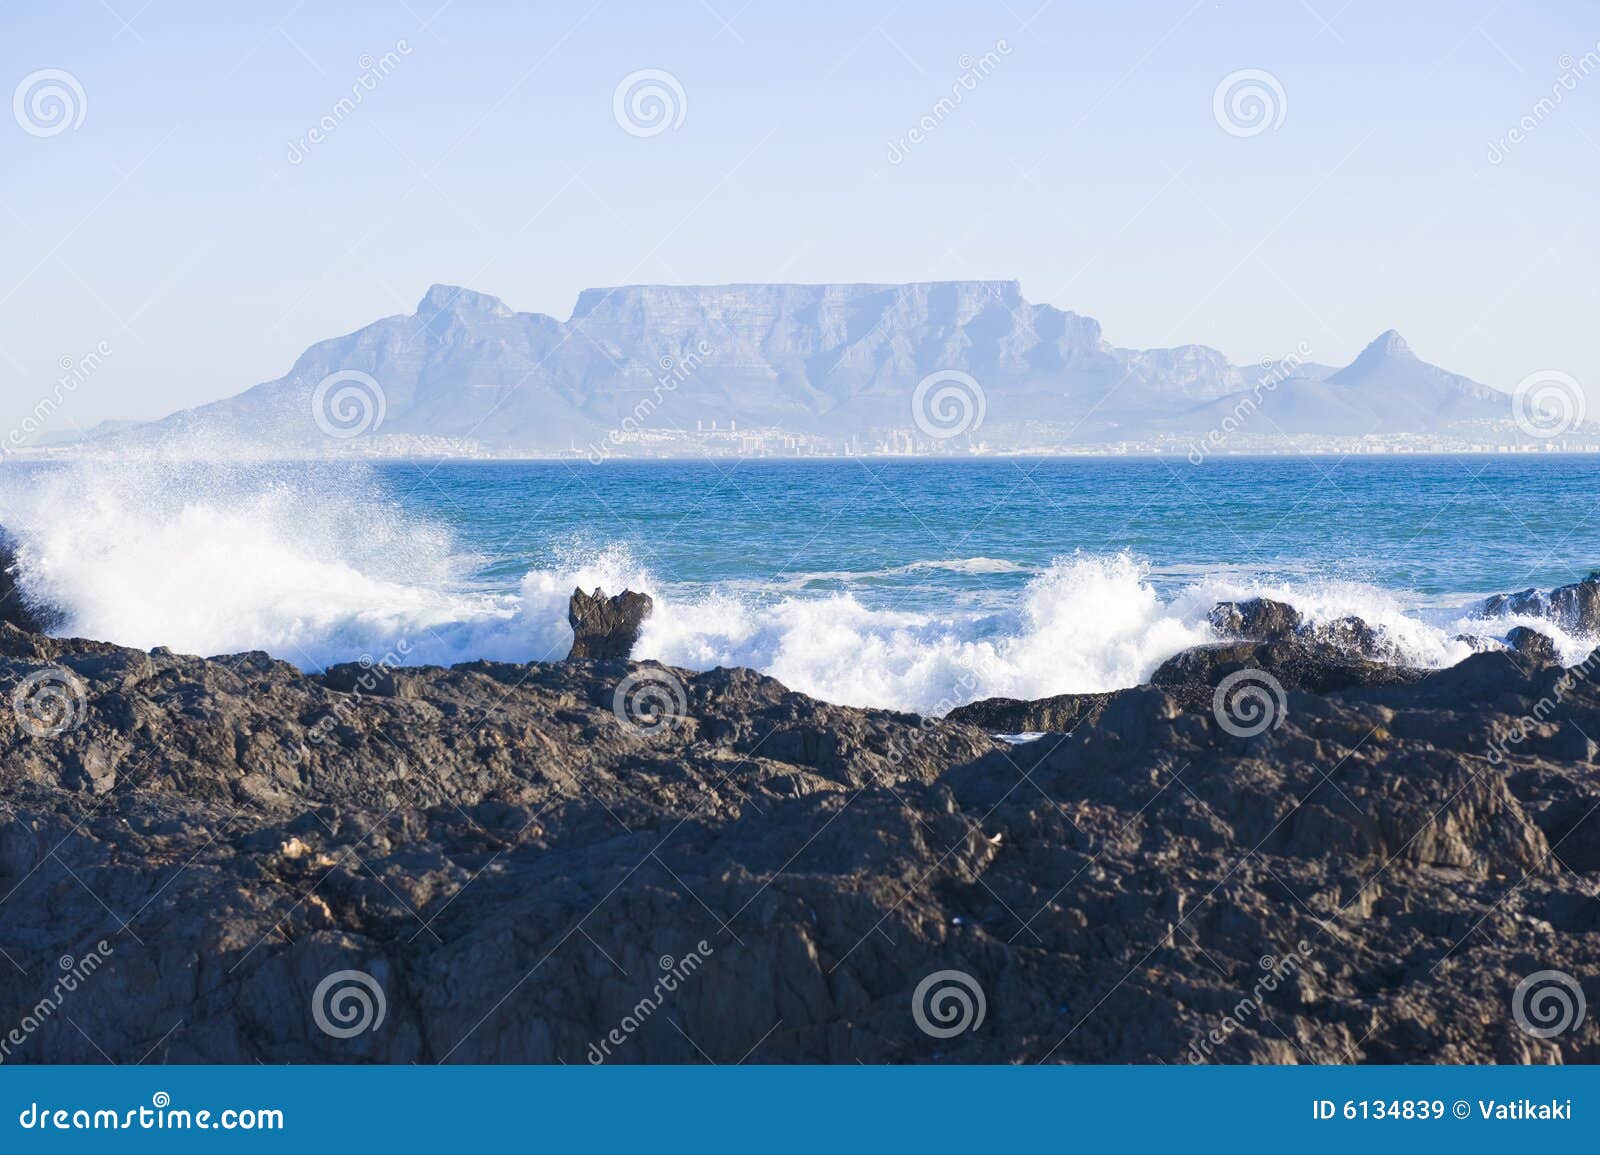 Montanha Cape Town da tabela. Montanha da tabela - o marco mundialmente famoso em Cape Town, África do Sul. Retrate tomado em um dia de invernos desobstruído da praia da costa de Blouberg. Uma parte rochosa da praia está no primeiro plano.